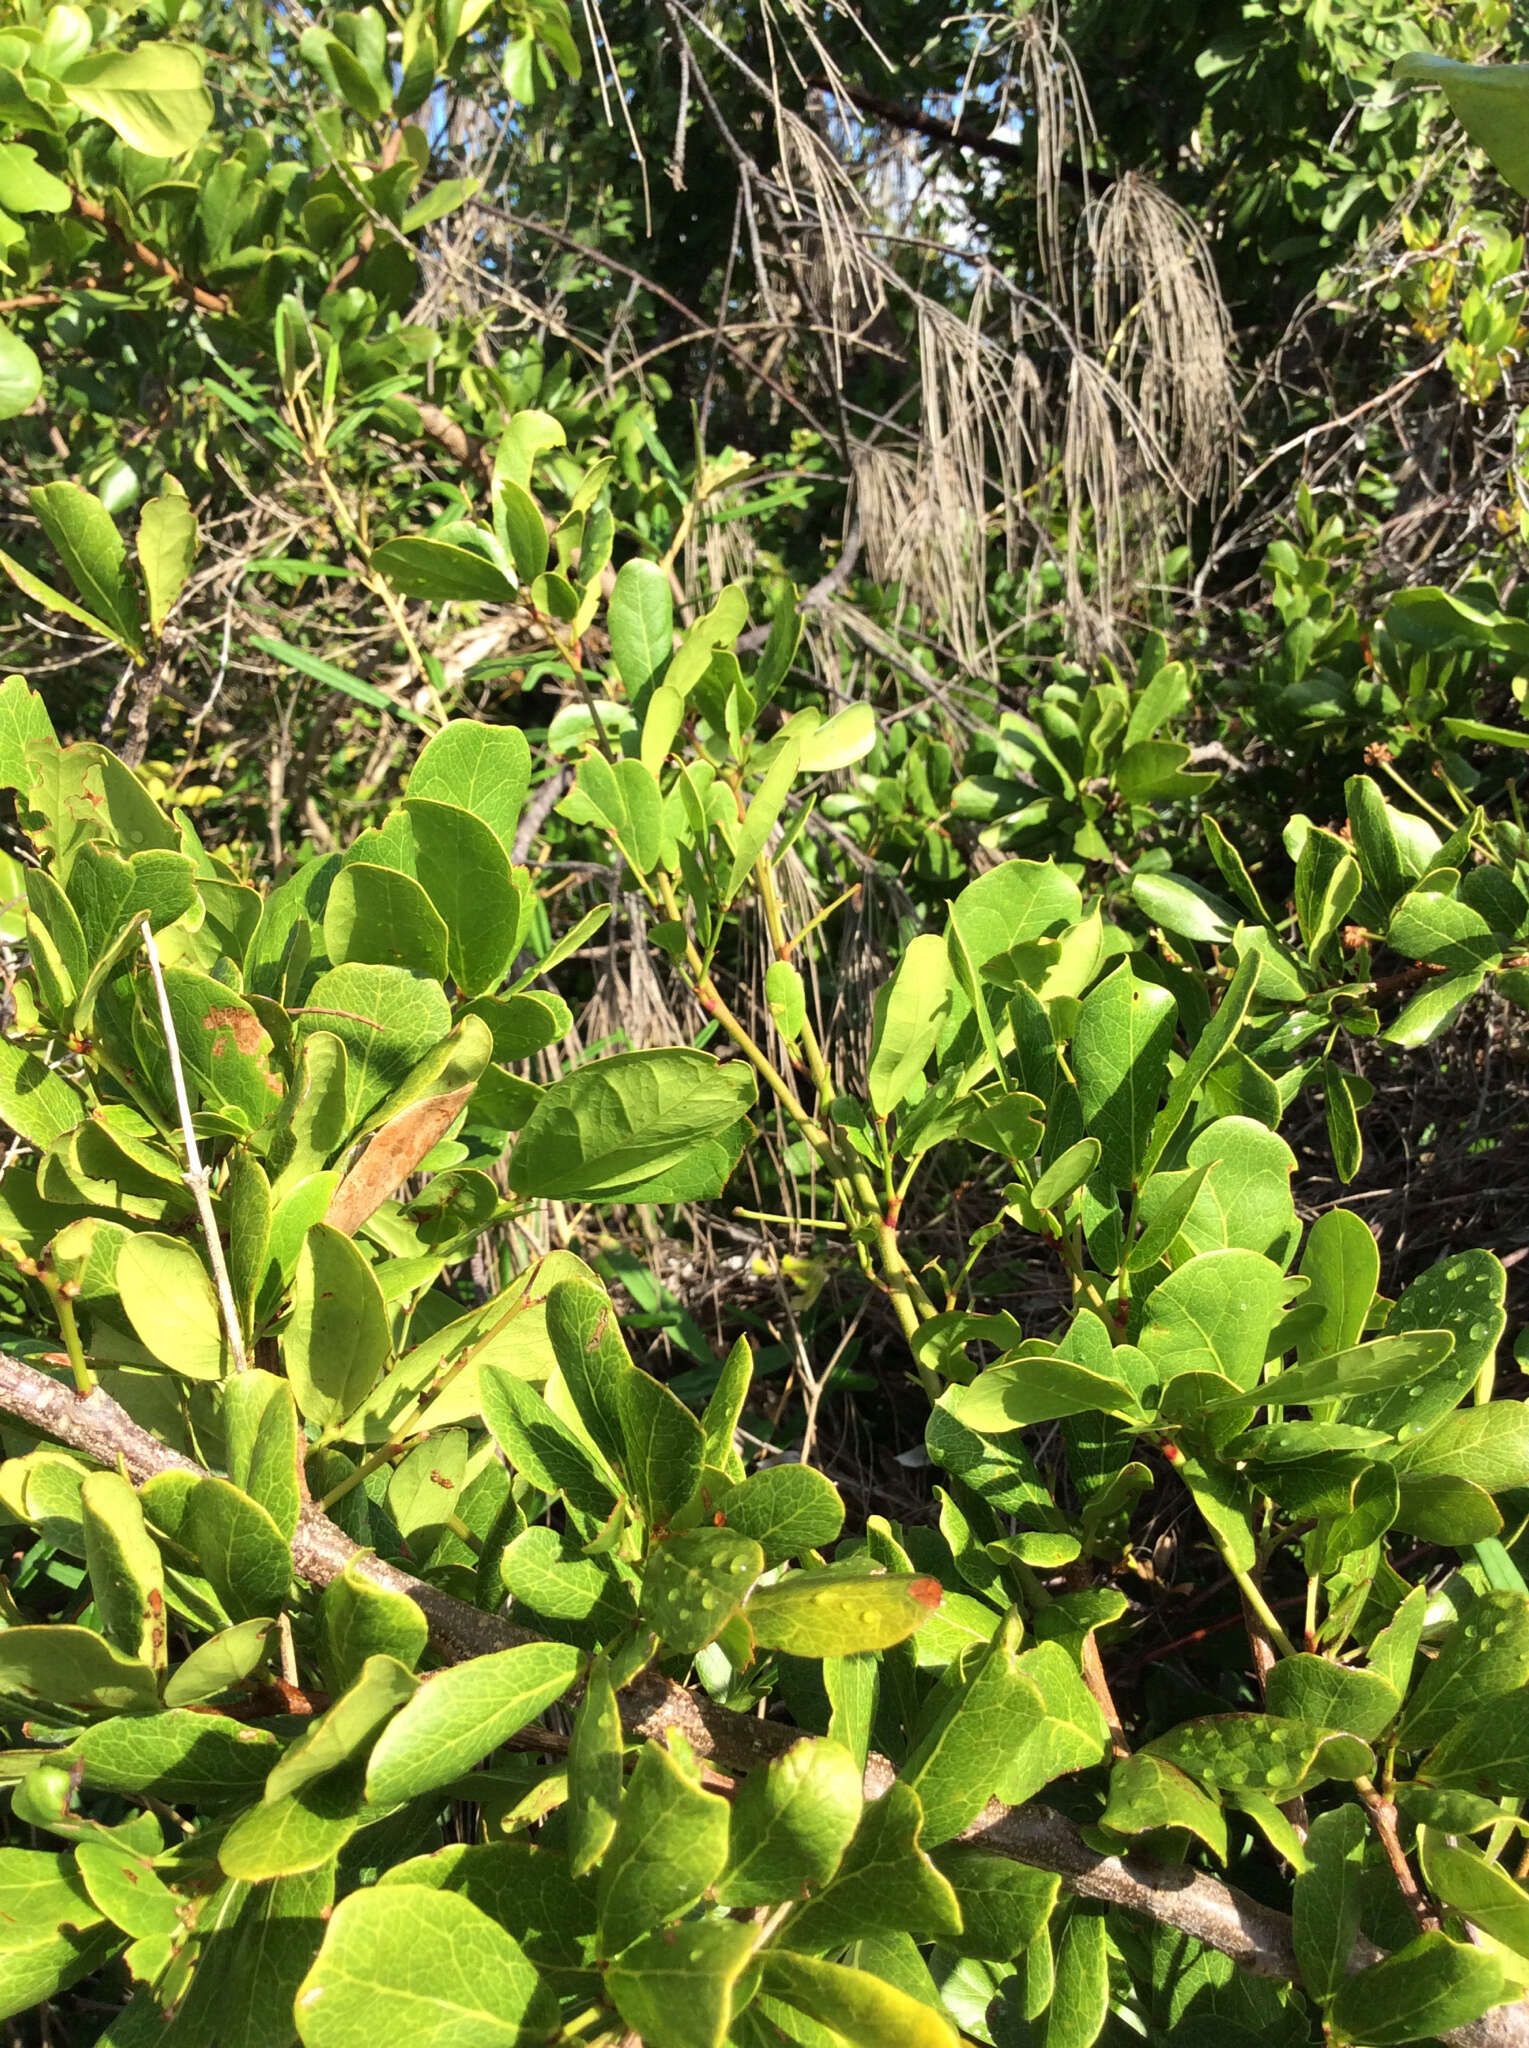 Image of Florida Keys blackbead